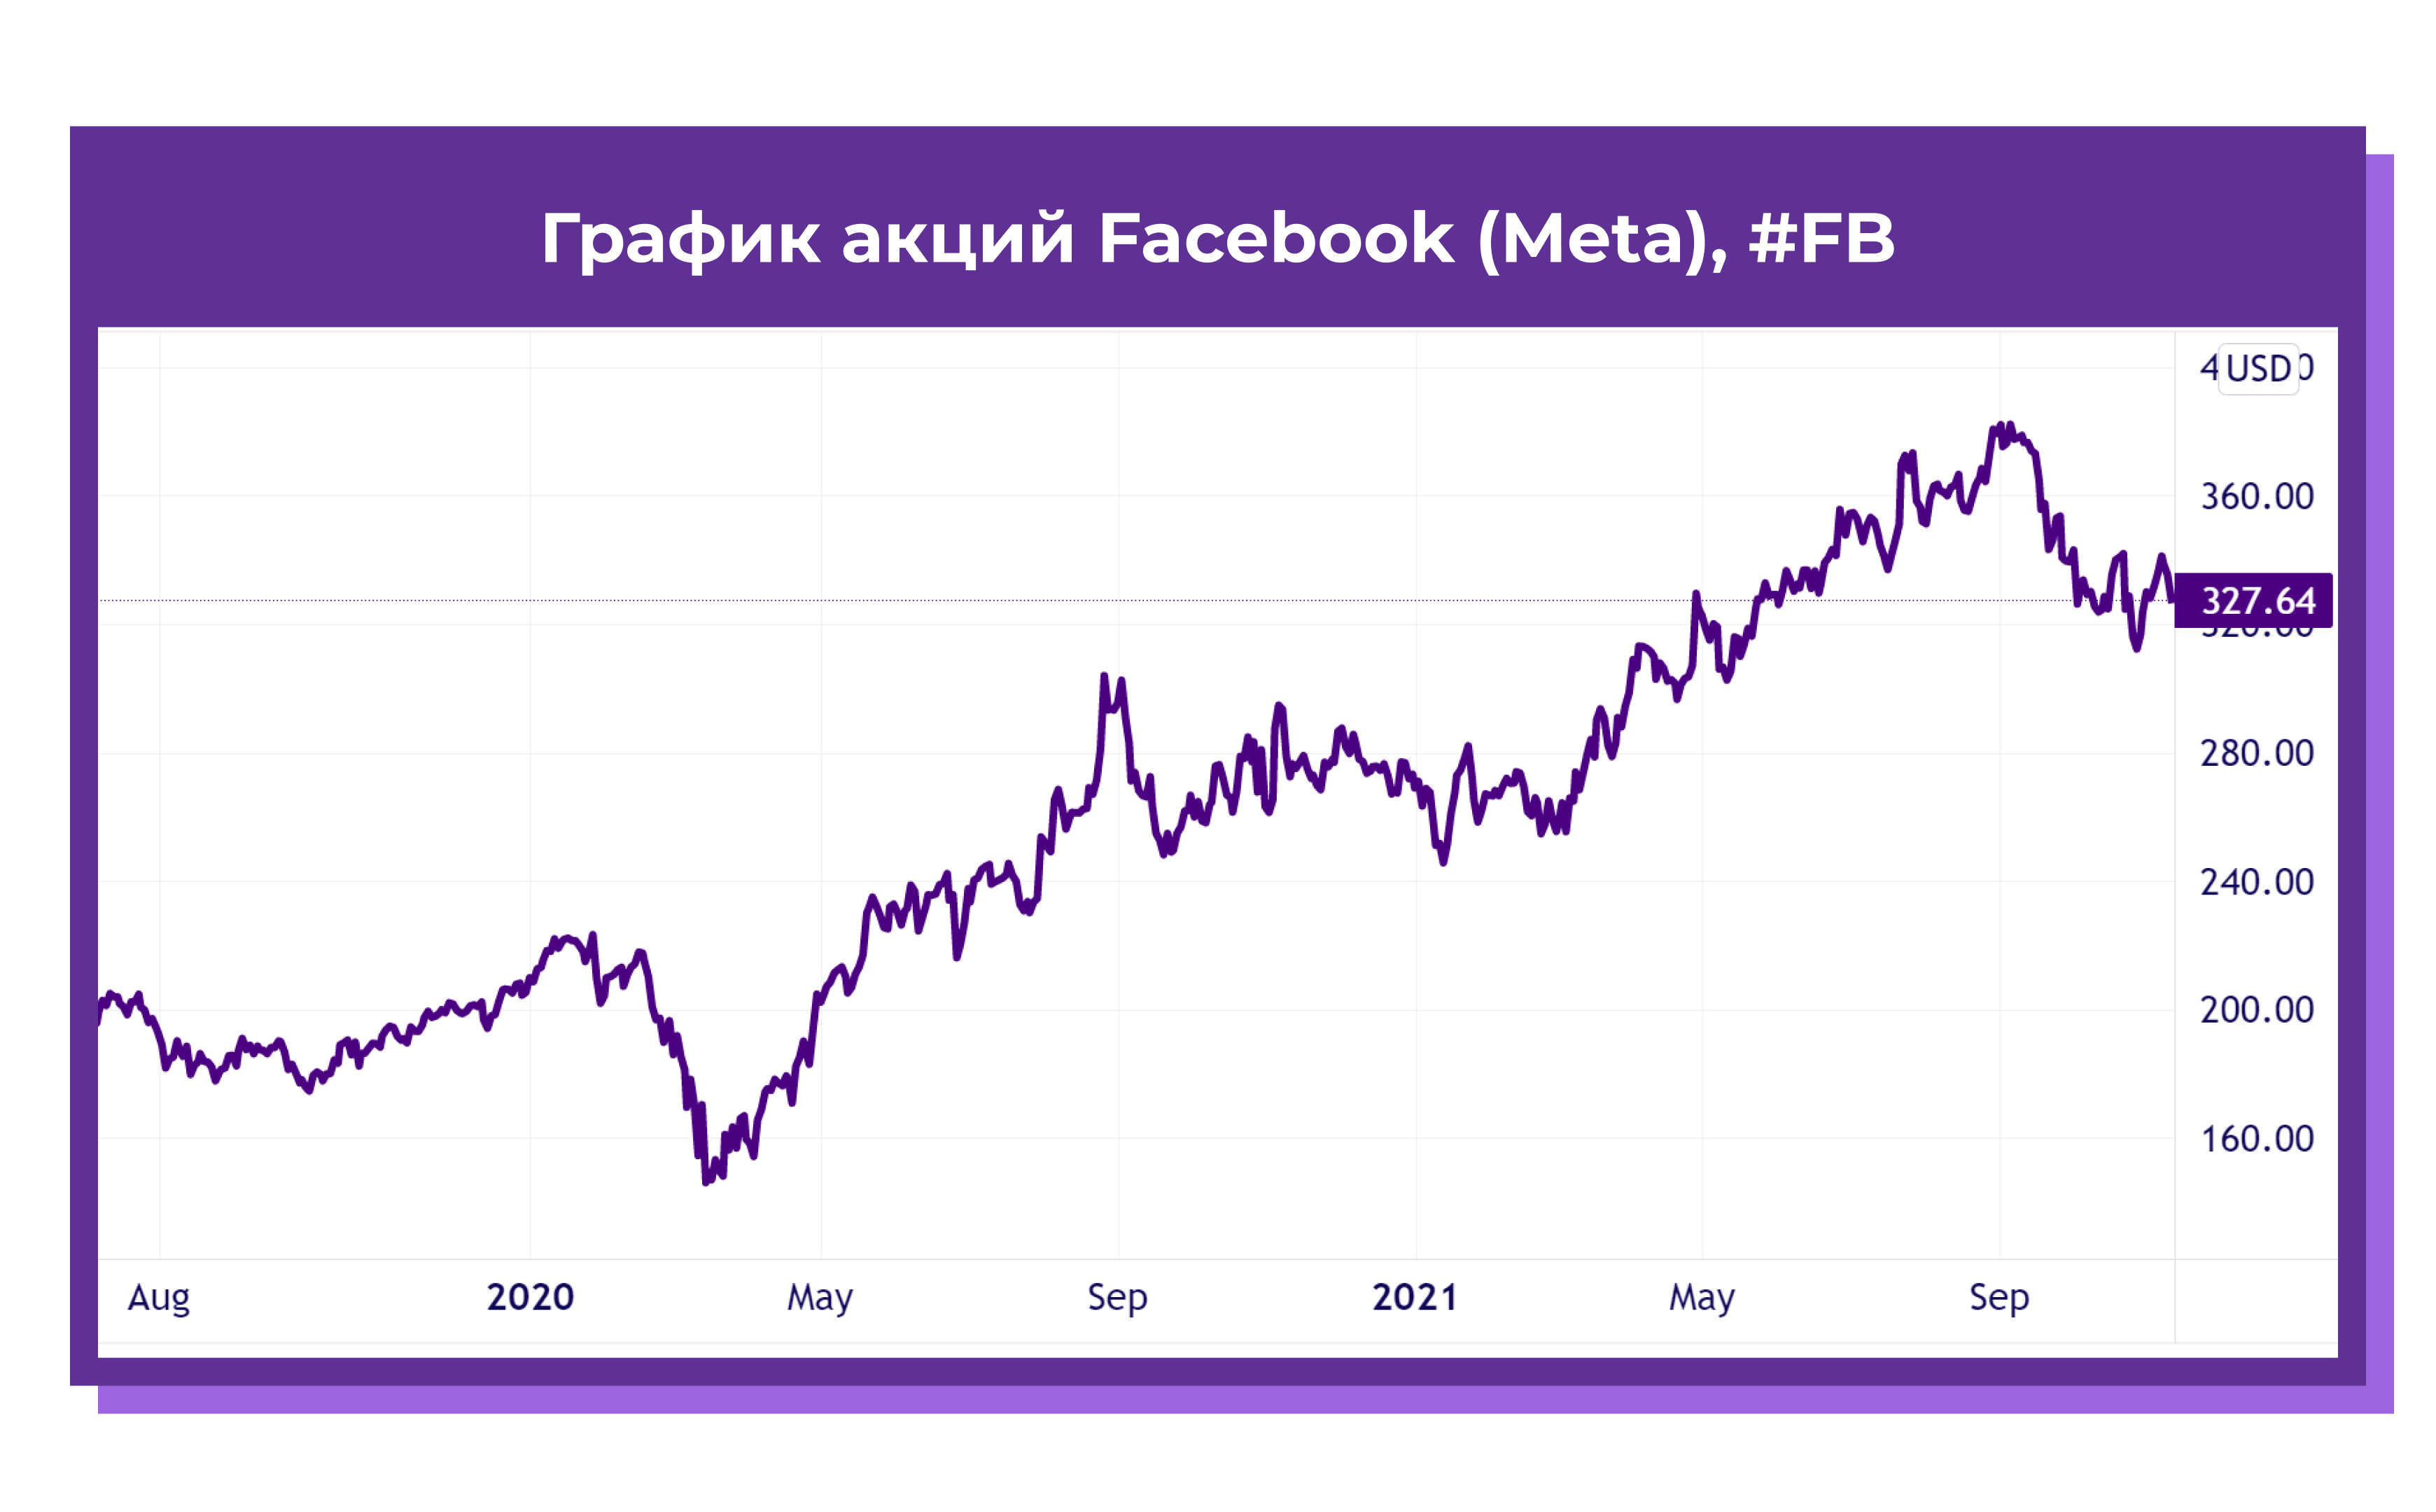 Европейская электротехника акции прогноз. Акции Facebook график. Акции Фейсбук график. Красный график акций. Графики акций красивые.